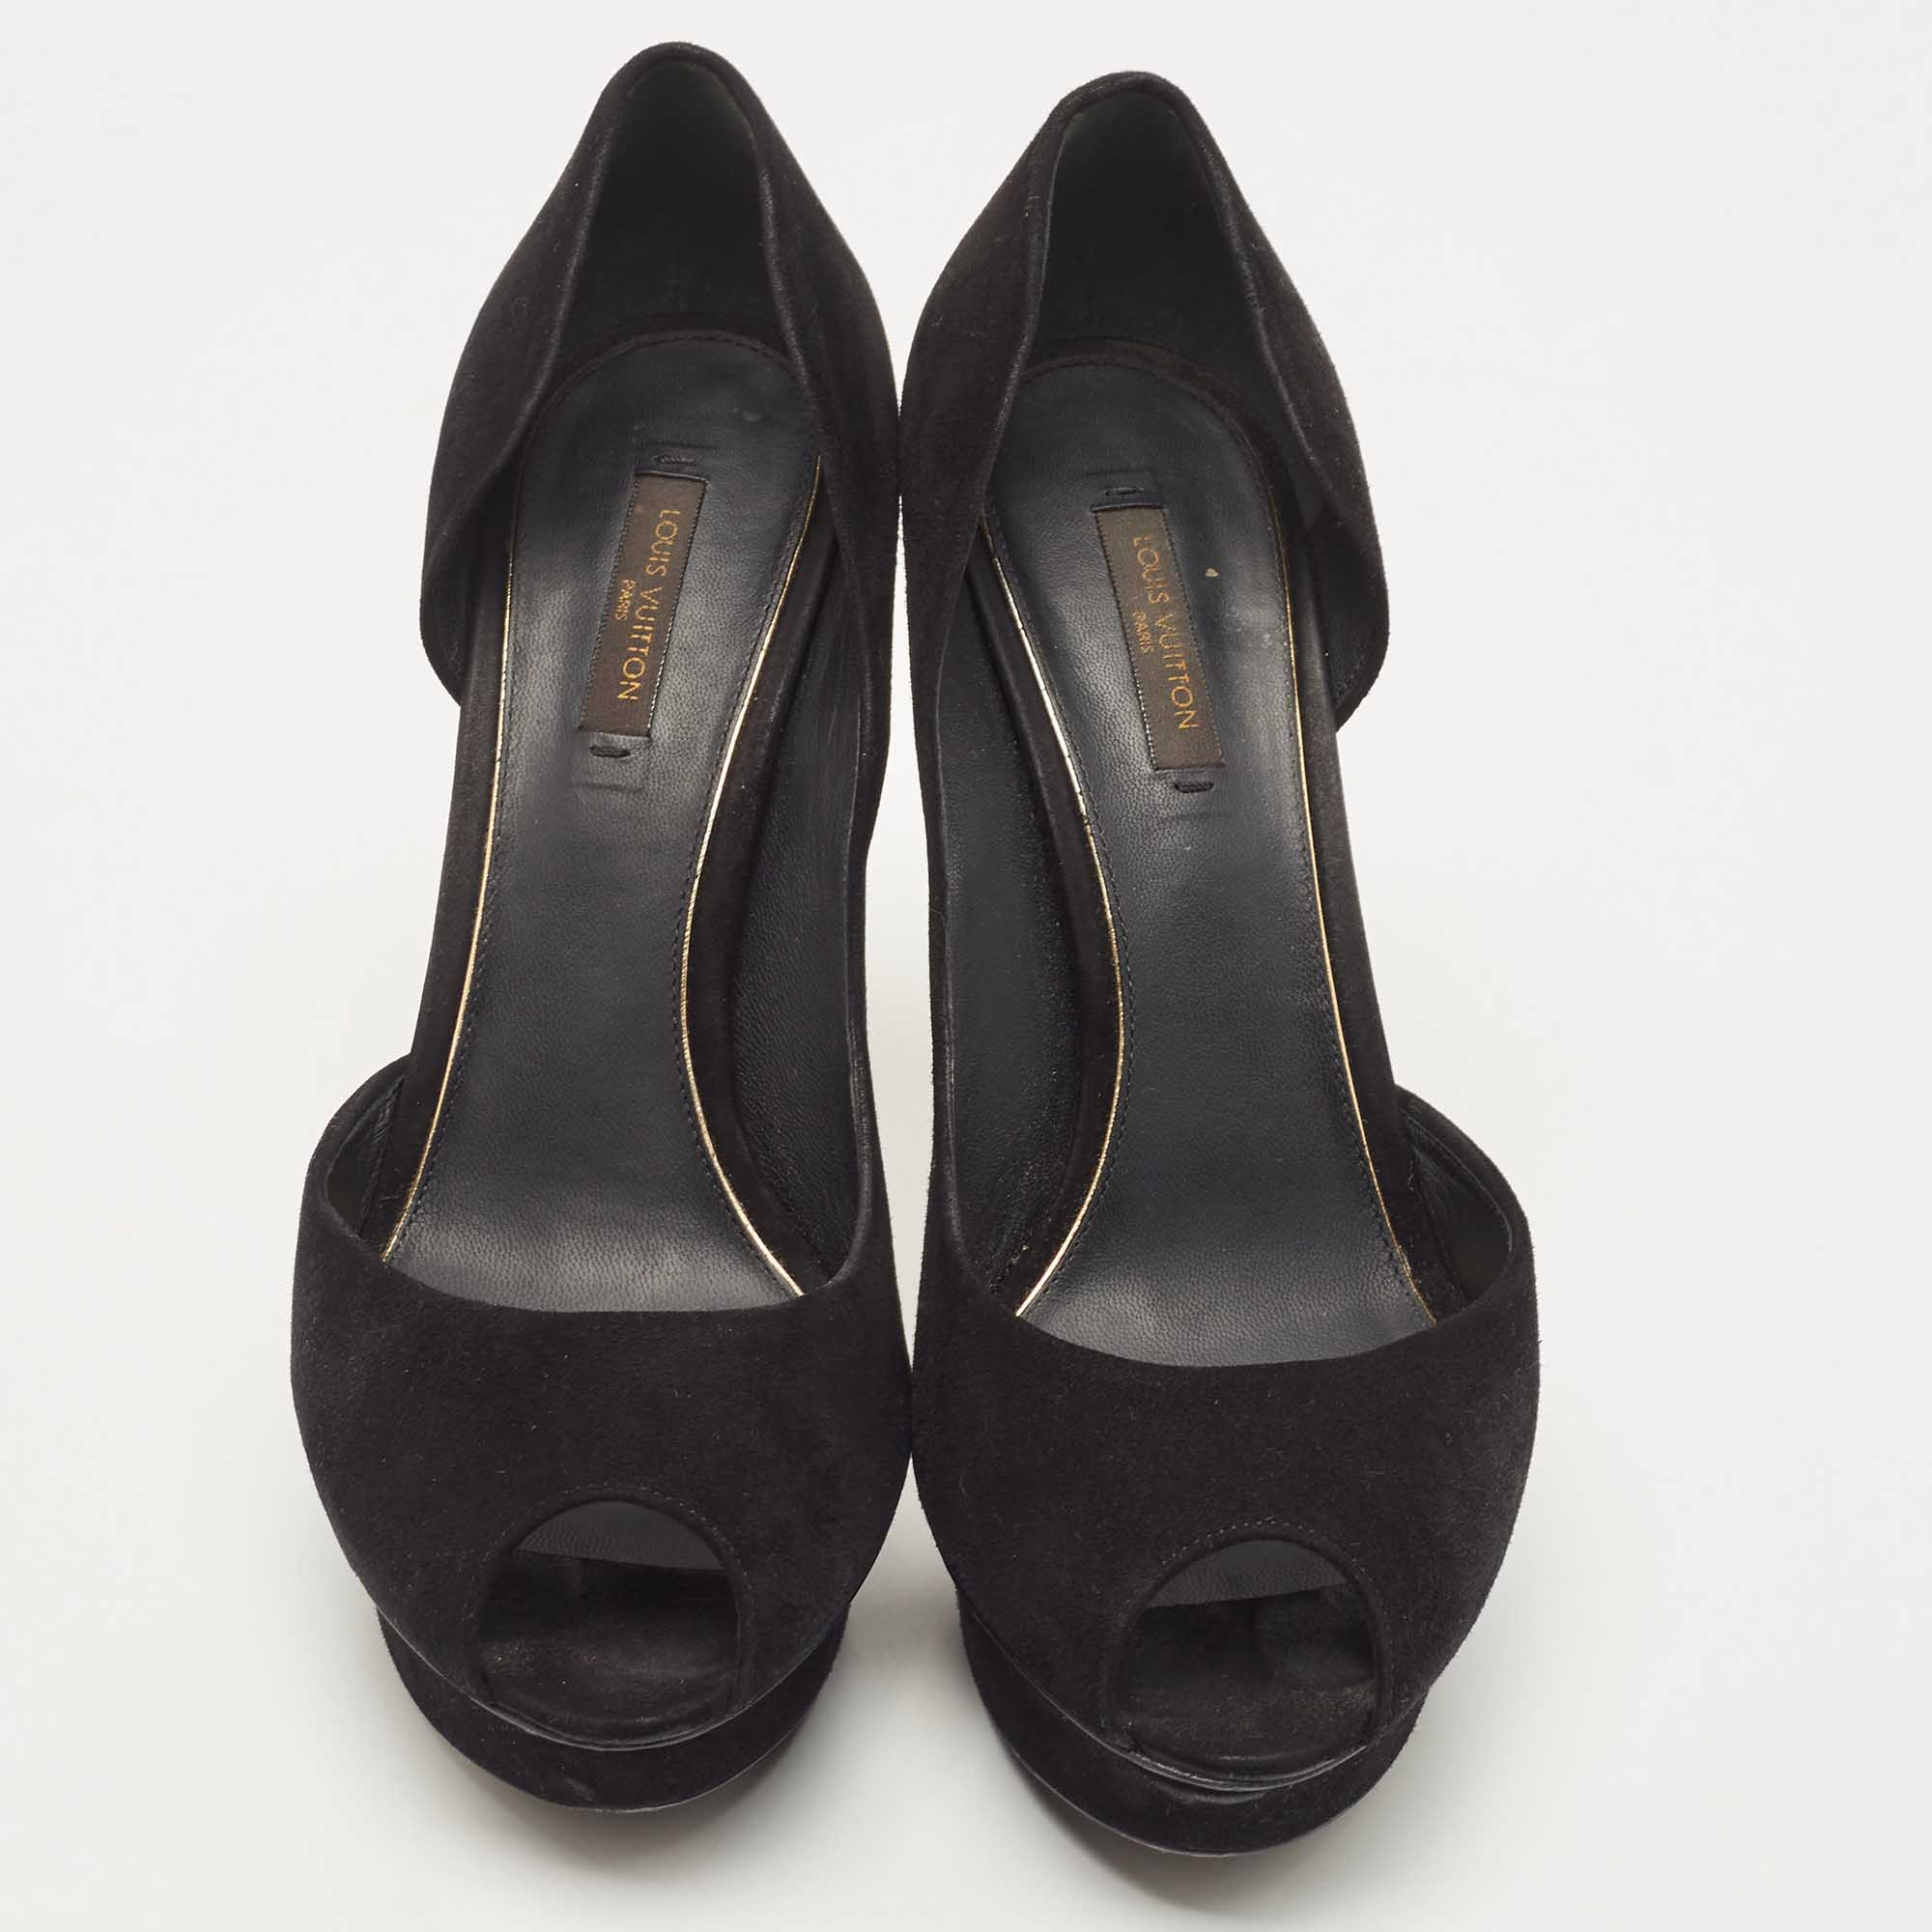 Louis Vuitton Black Suede D'orsay Peep Toe Pumps Size 39